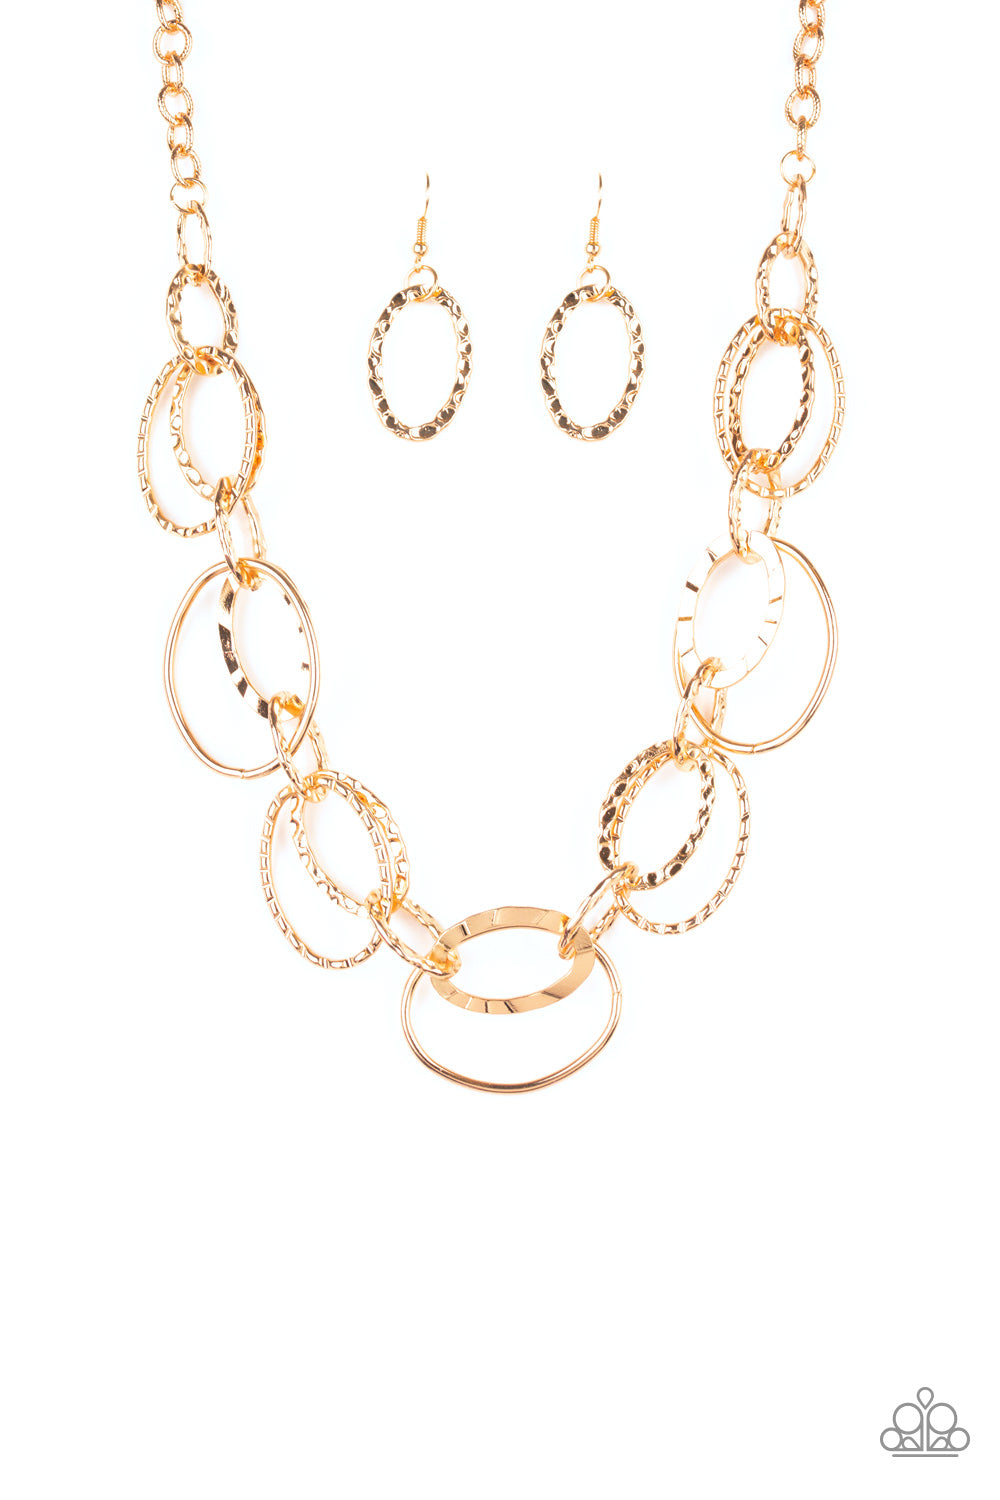 Bend OVAL Backwards - Gold Necklace Set - Princess Glam Shop